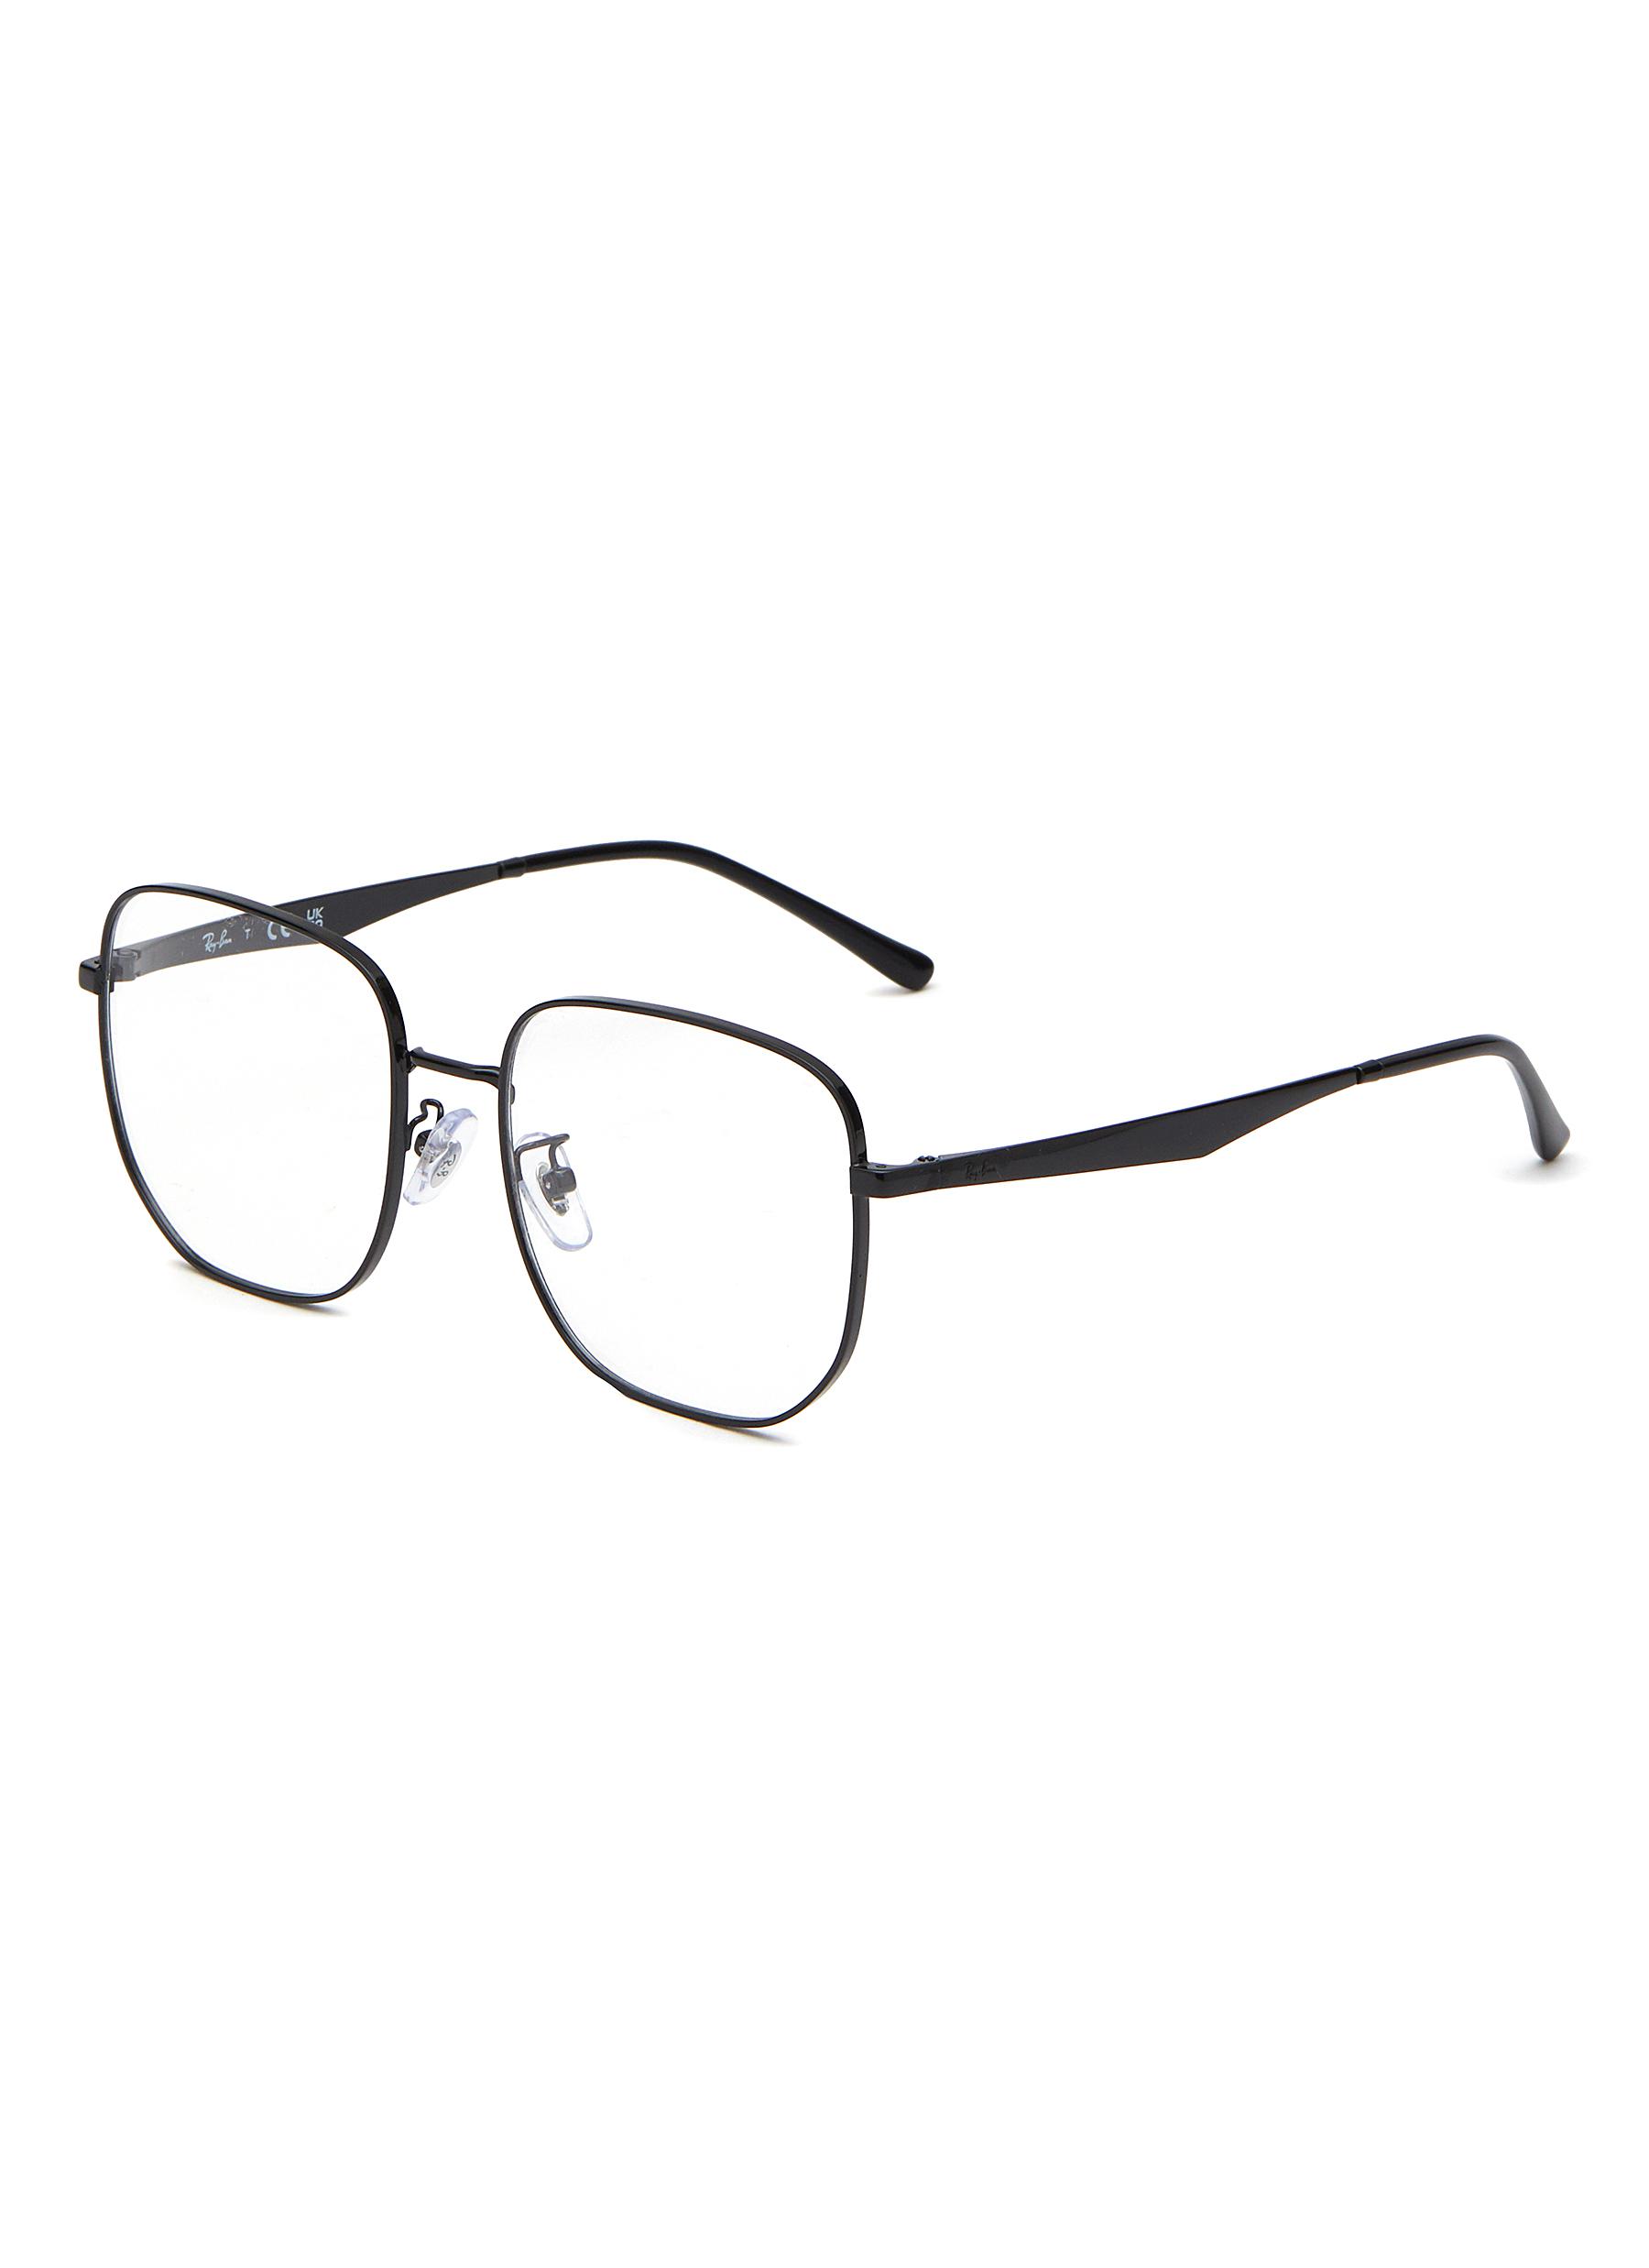 Metal Square Optical Glasses